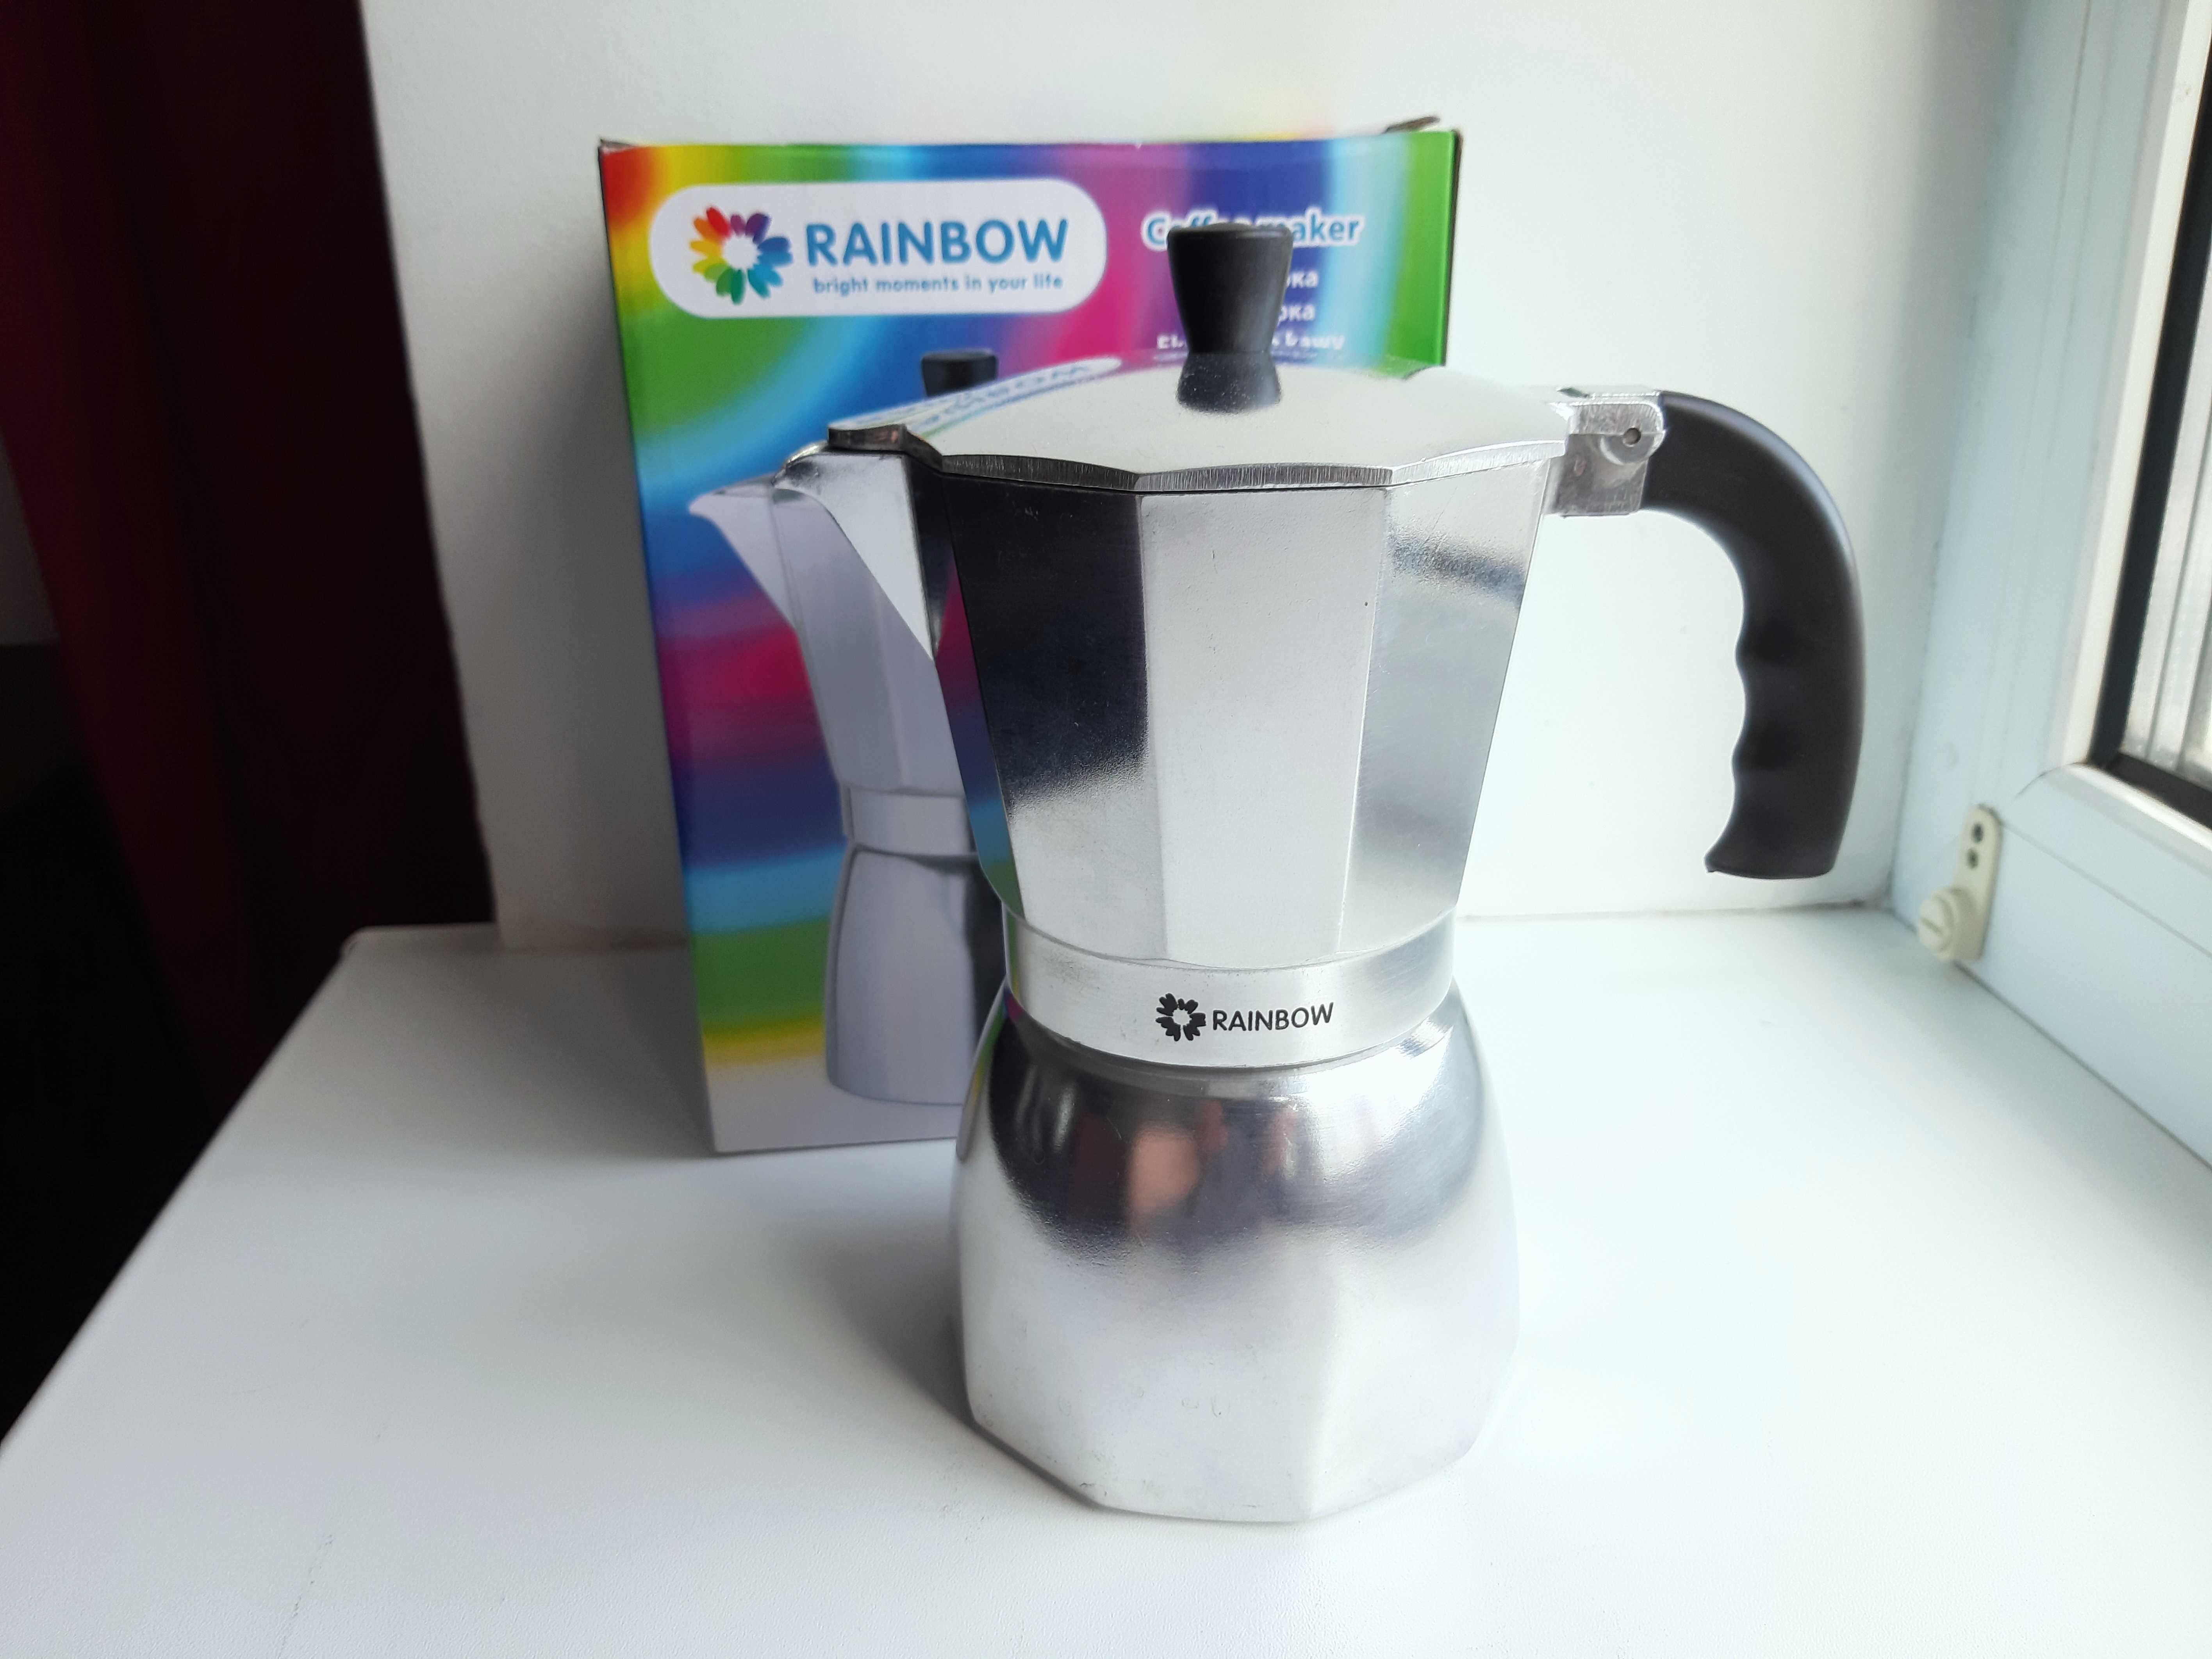 Гейзерна кавоварка кофеварка Rainbow MR 1667-6 на 6 чашок порцій